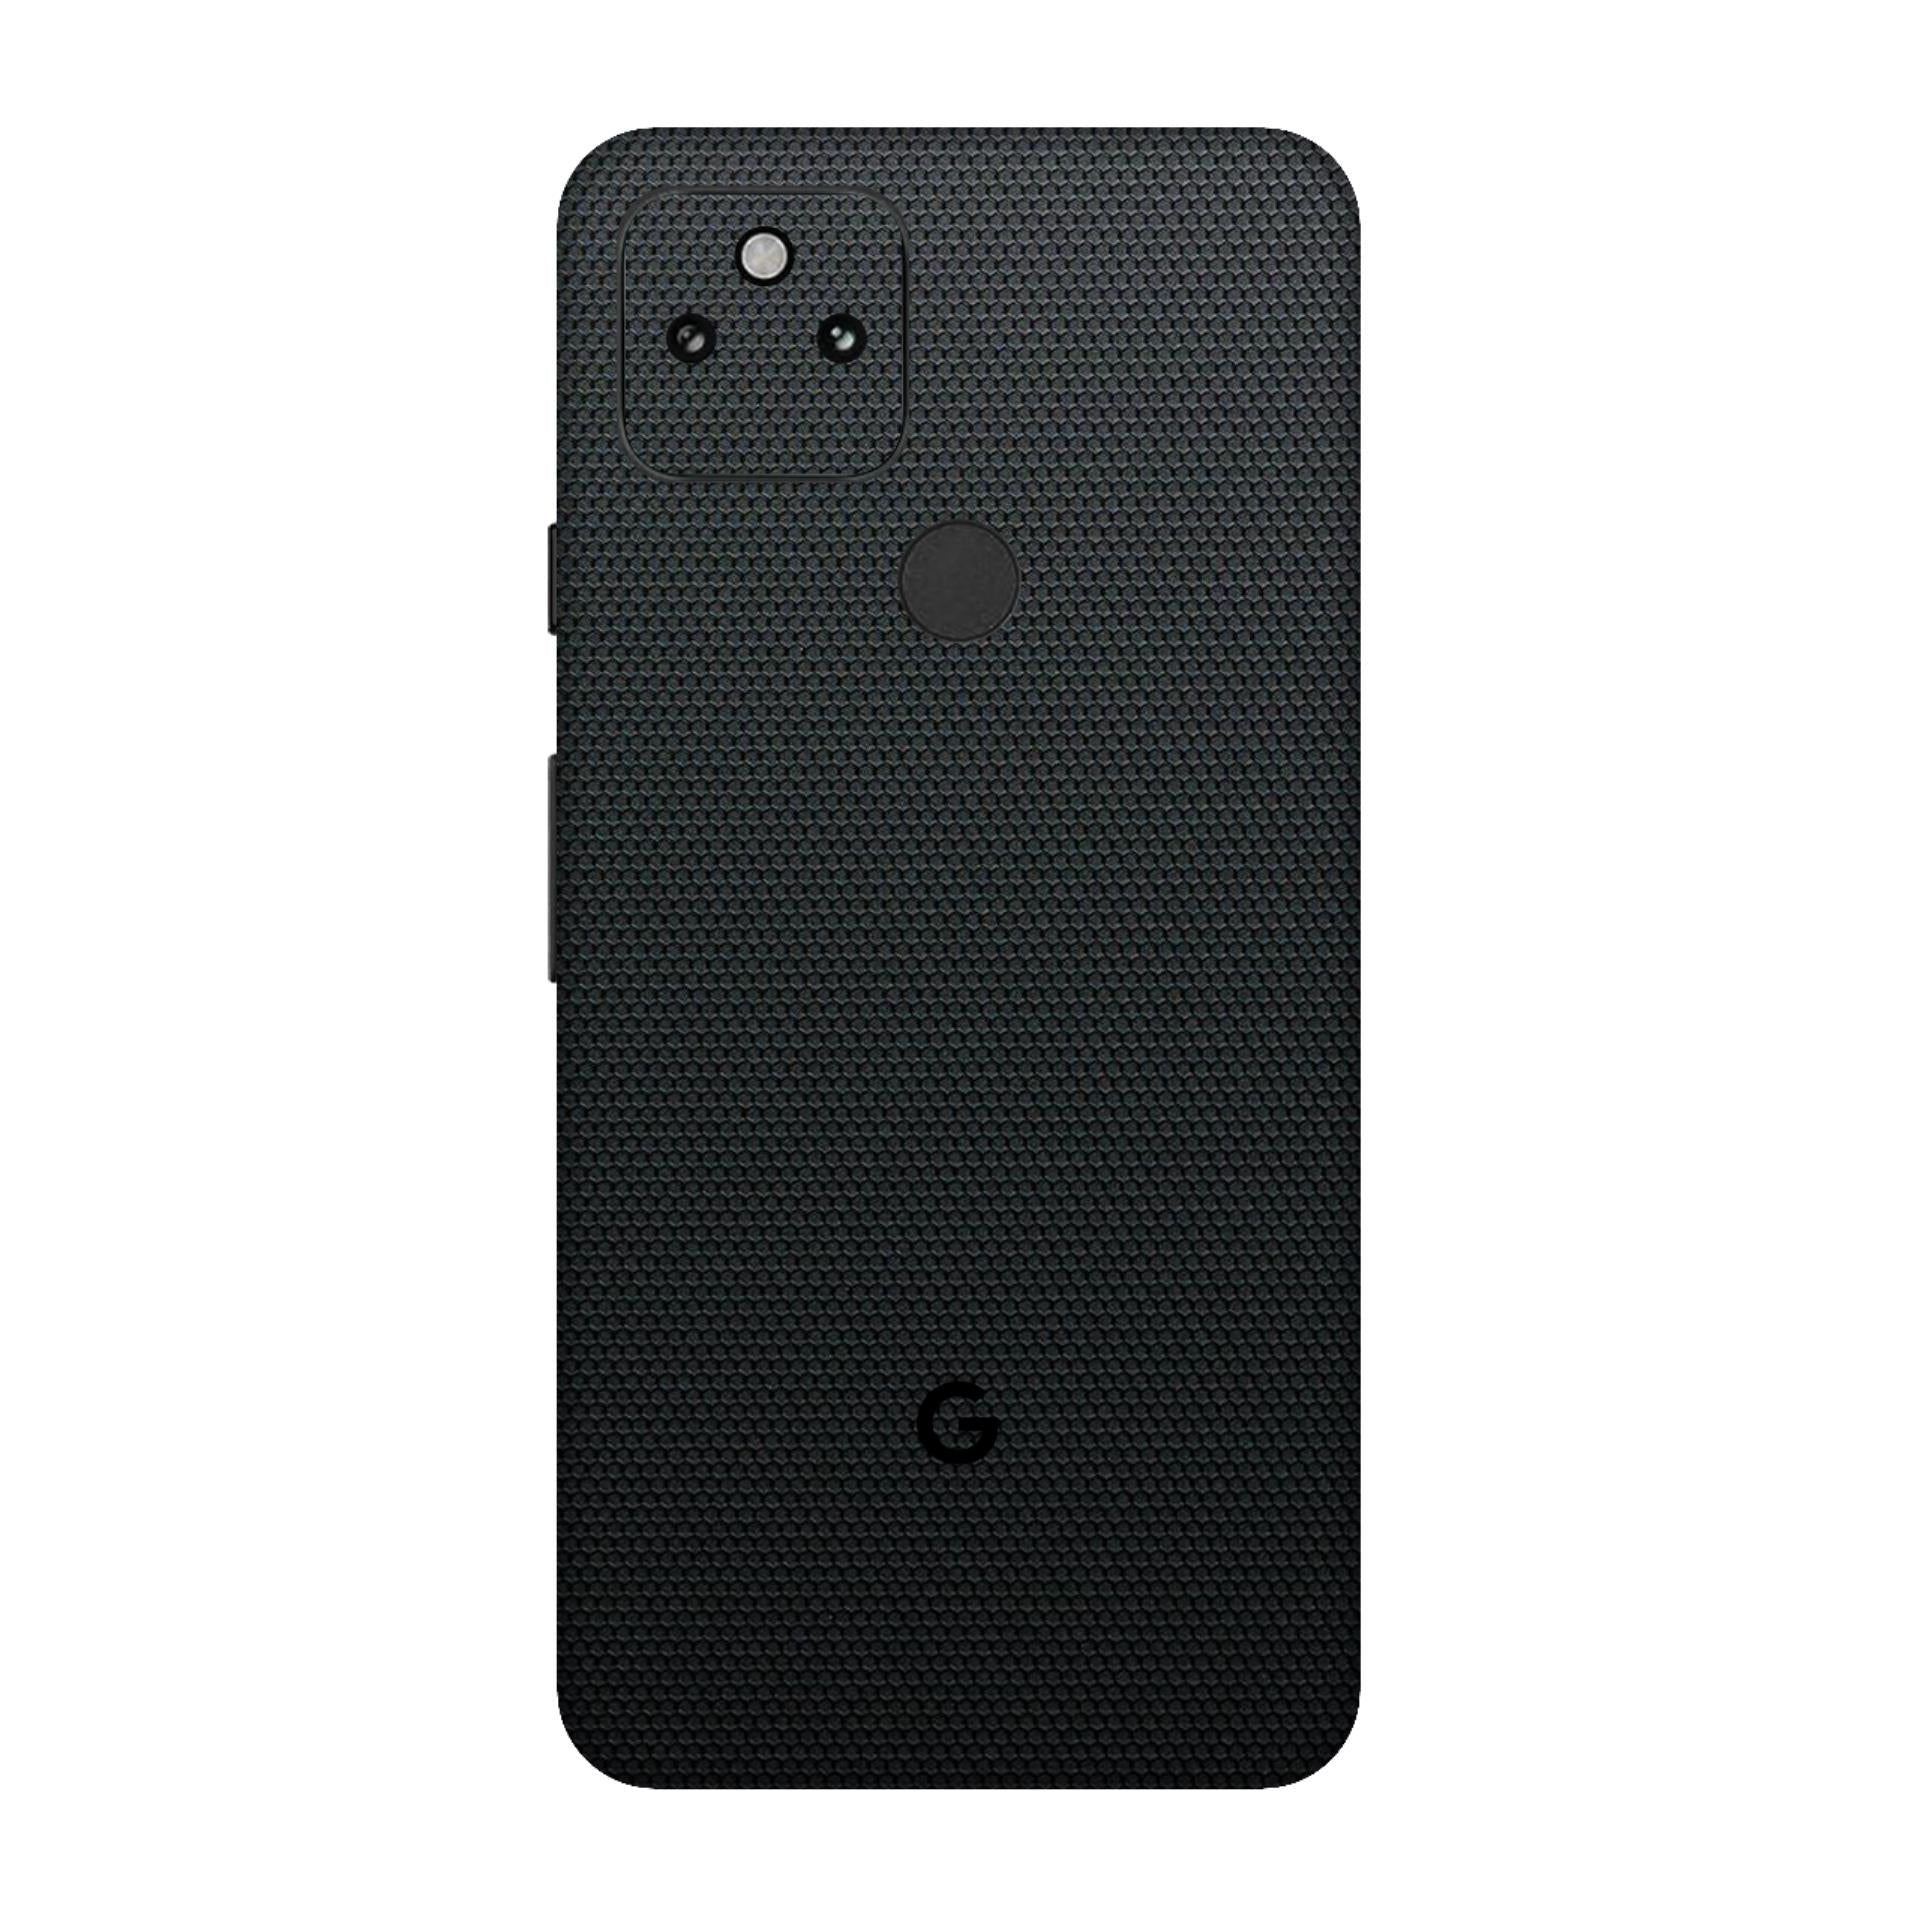 Google Pixel 5a Skins & Wraps